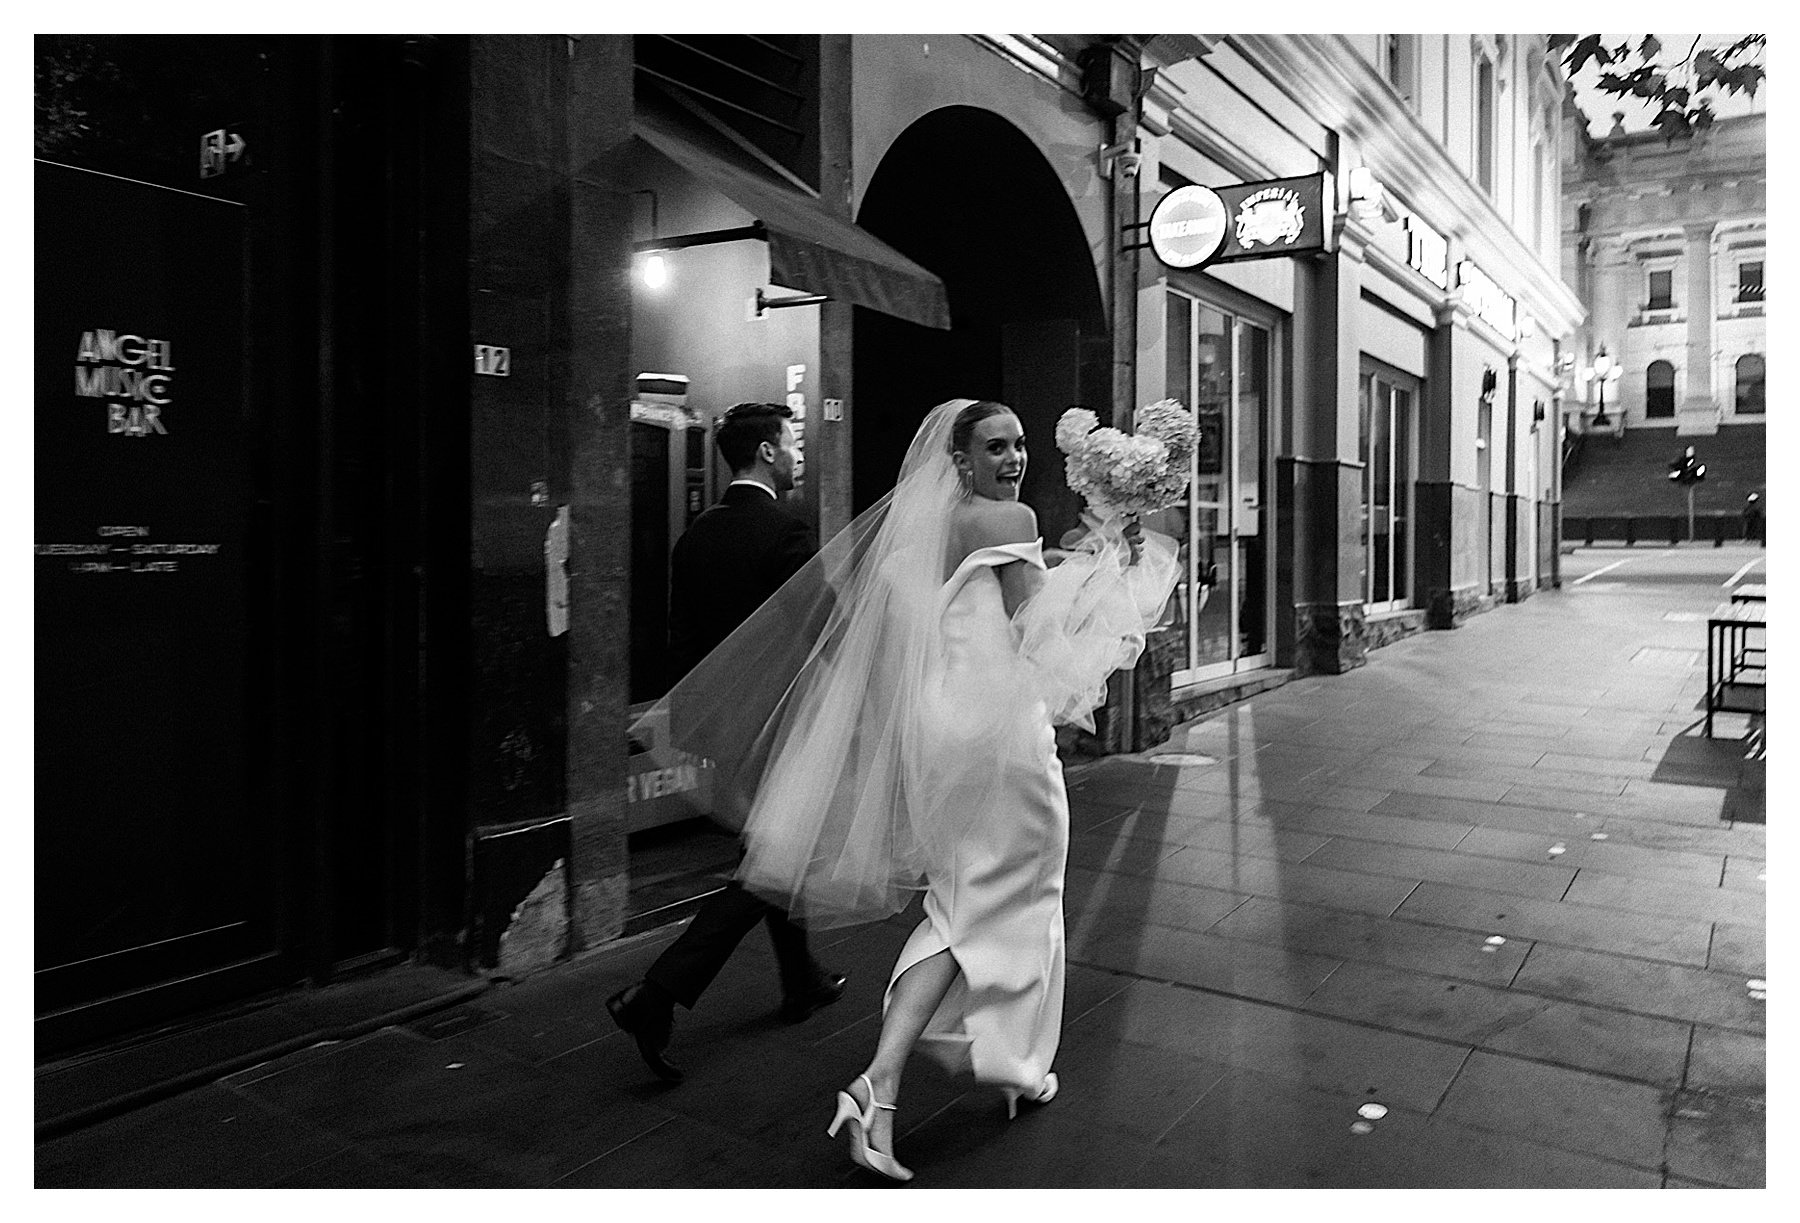 Siglo-Wedding-photography 001.jpg